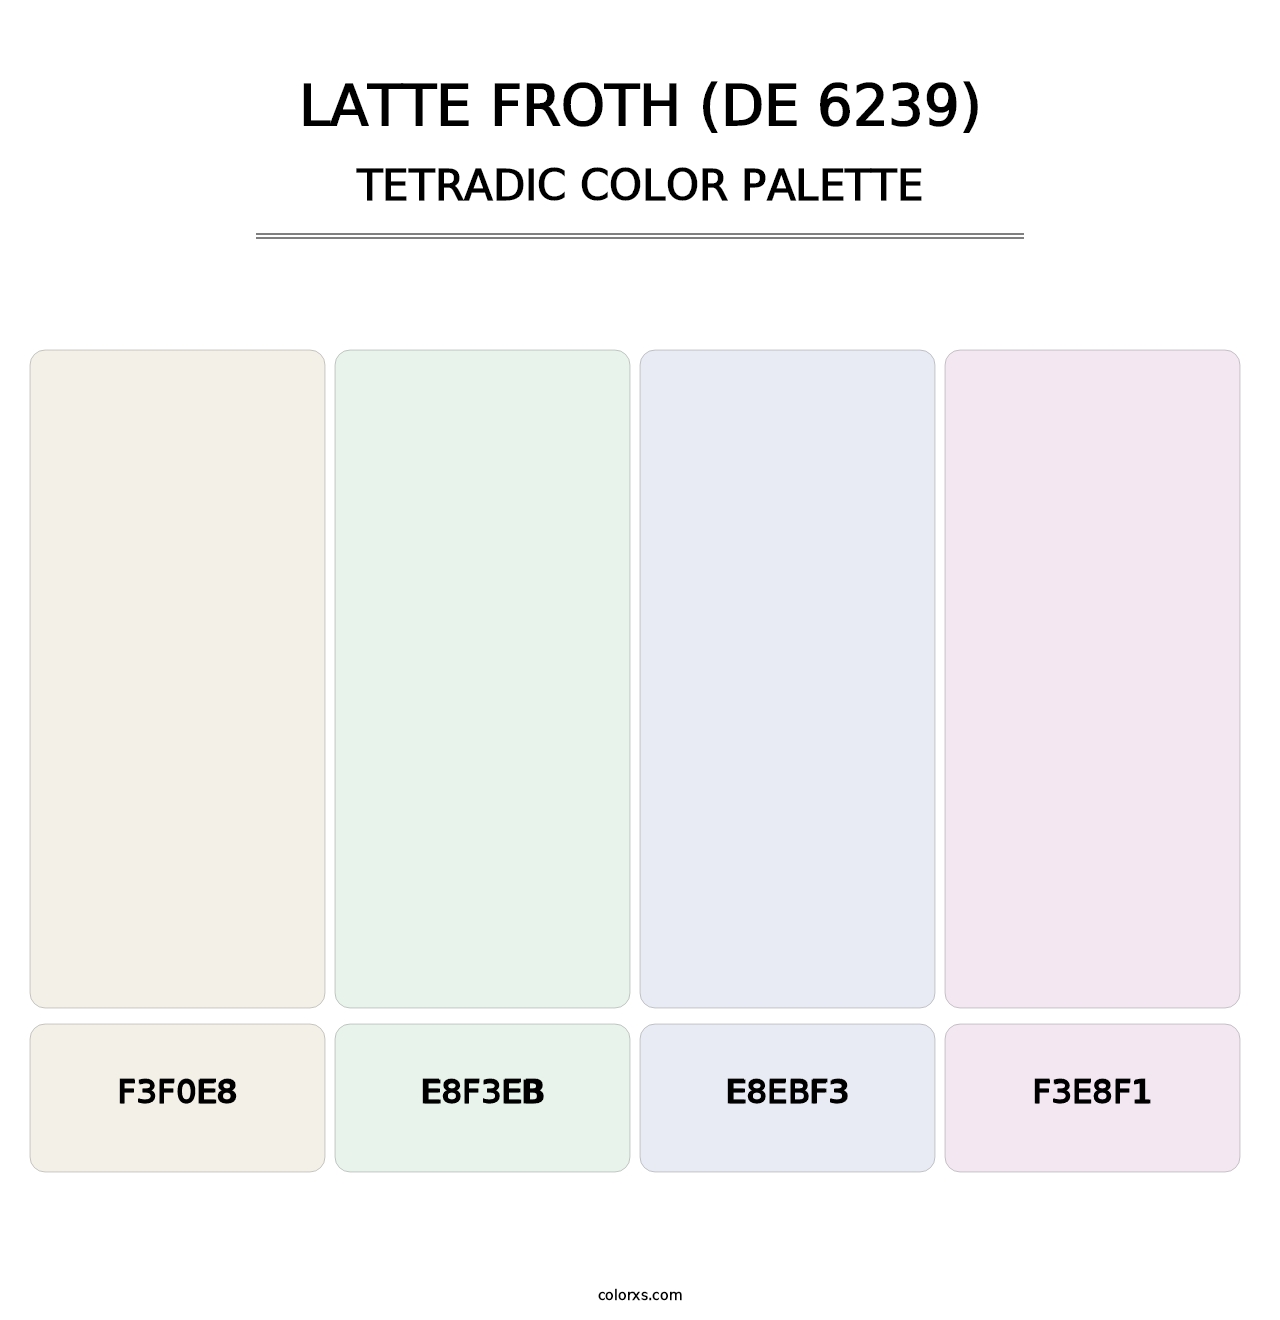 Latte Froth (DE 6239) - Tetradic Color Palette